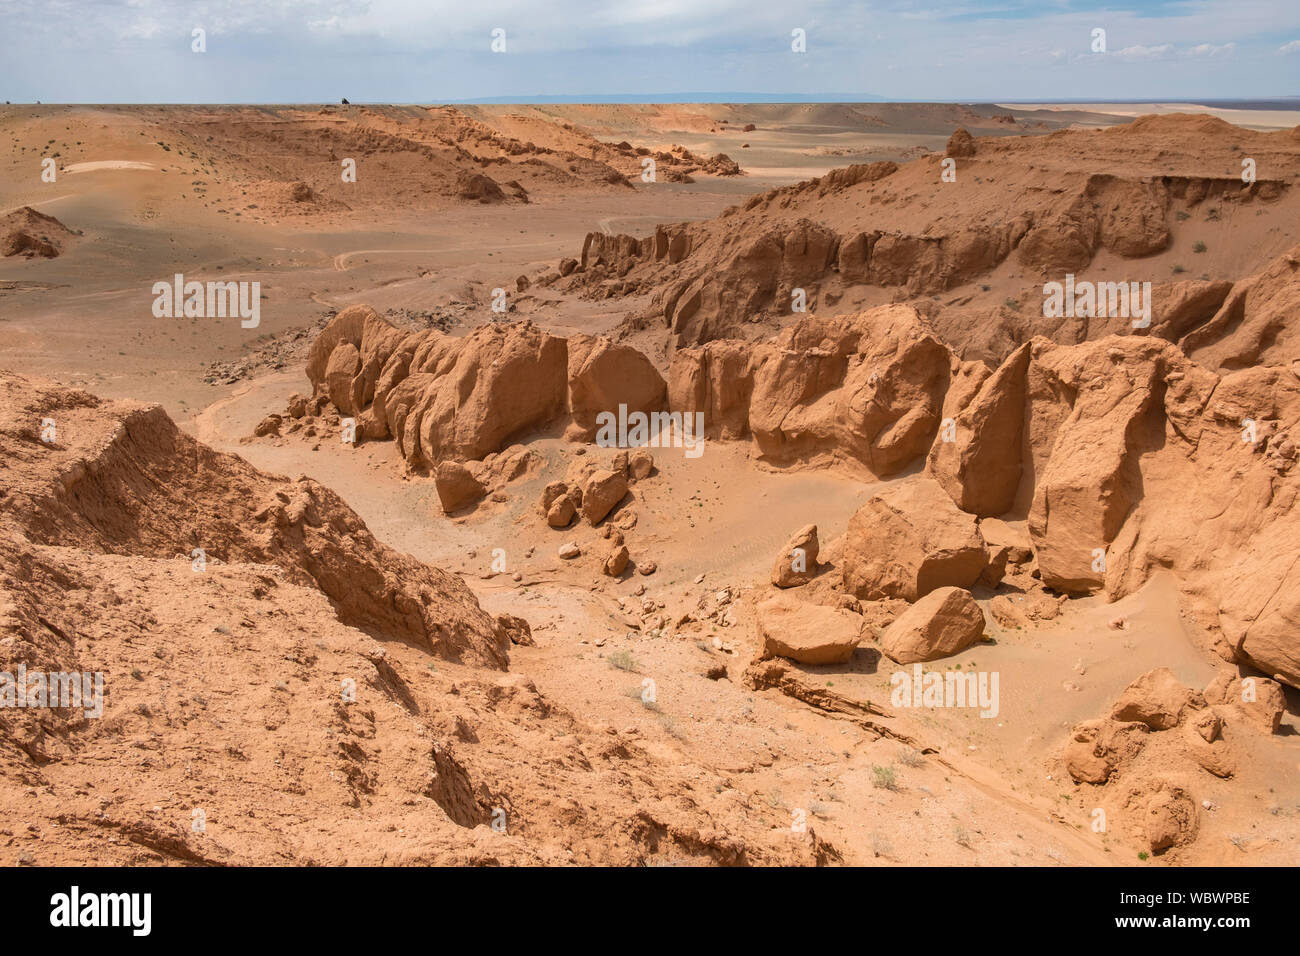 El Flaming Cliffs es un sitio de la región del Desierto de Gobi, en la provincia de Ömnögovi Mongolia, en la que importantes hallazgos fósiles han sido realizados. La zona Foto de stock